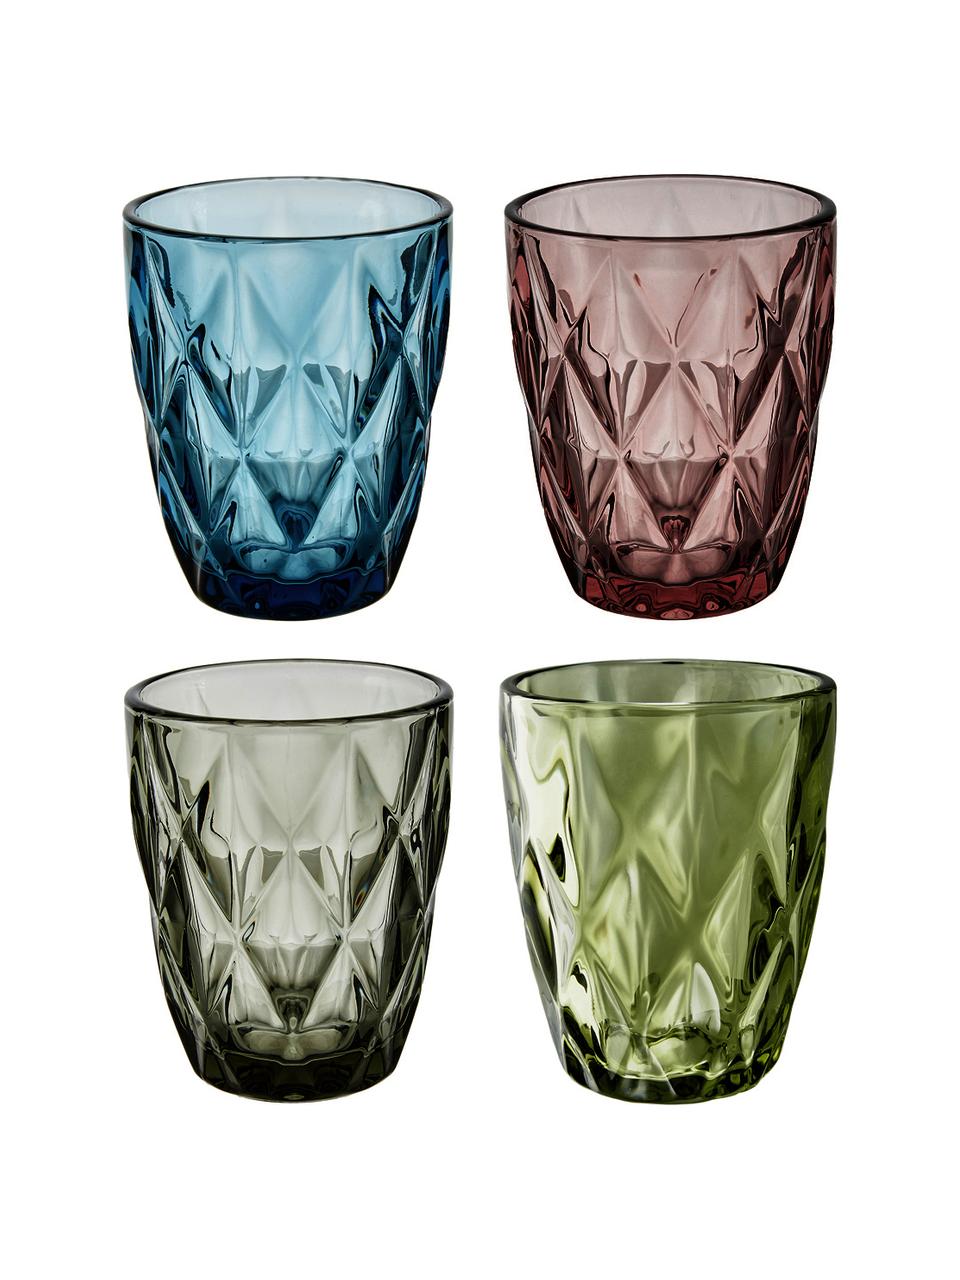 Komplet szklanek Colorado, 4 elem., Szkło, Zielony, blady różowy, niebieski, szary, Ø 8 x W 10 cm, 260 ml